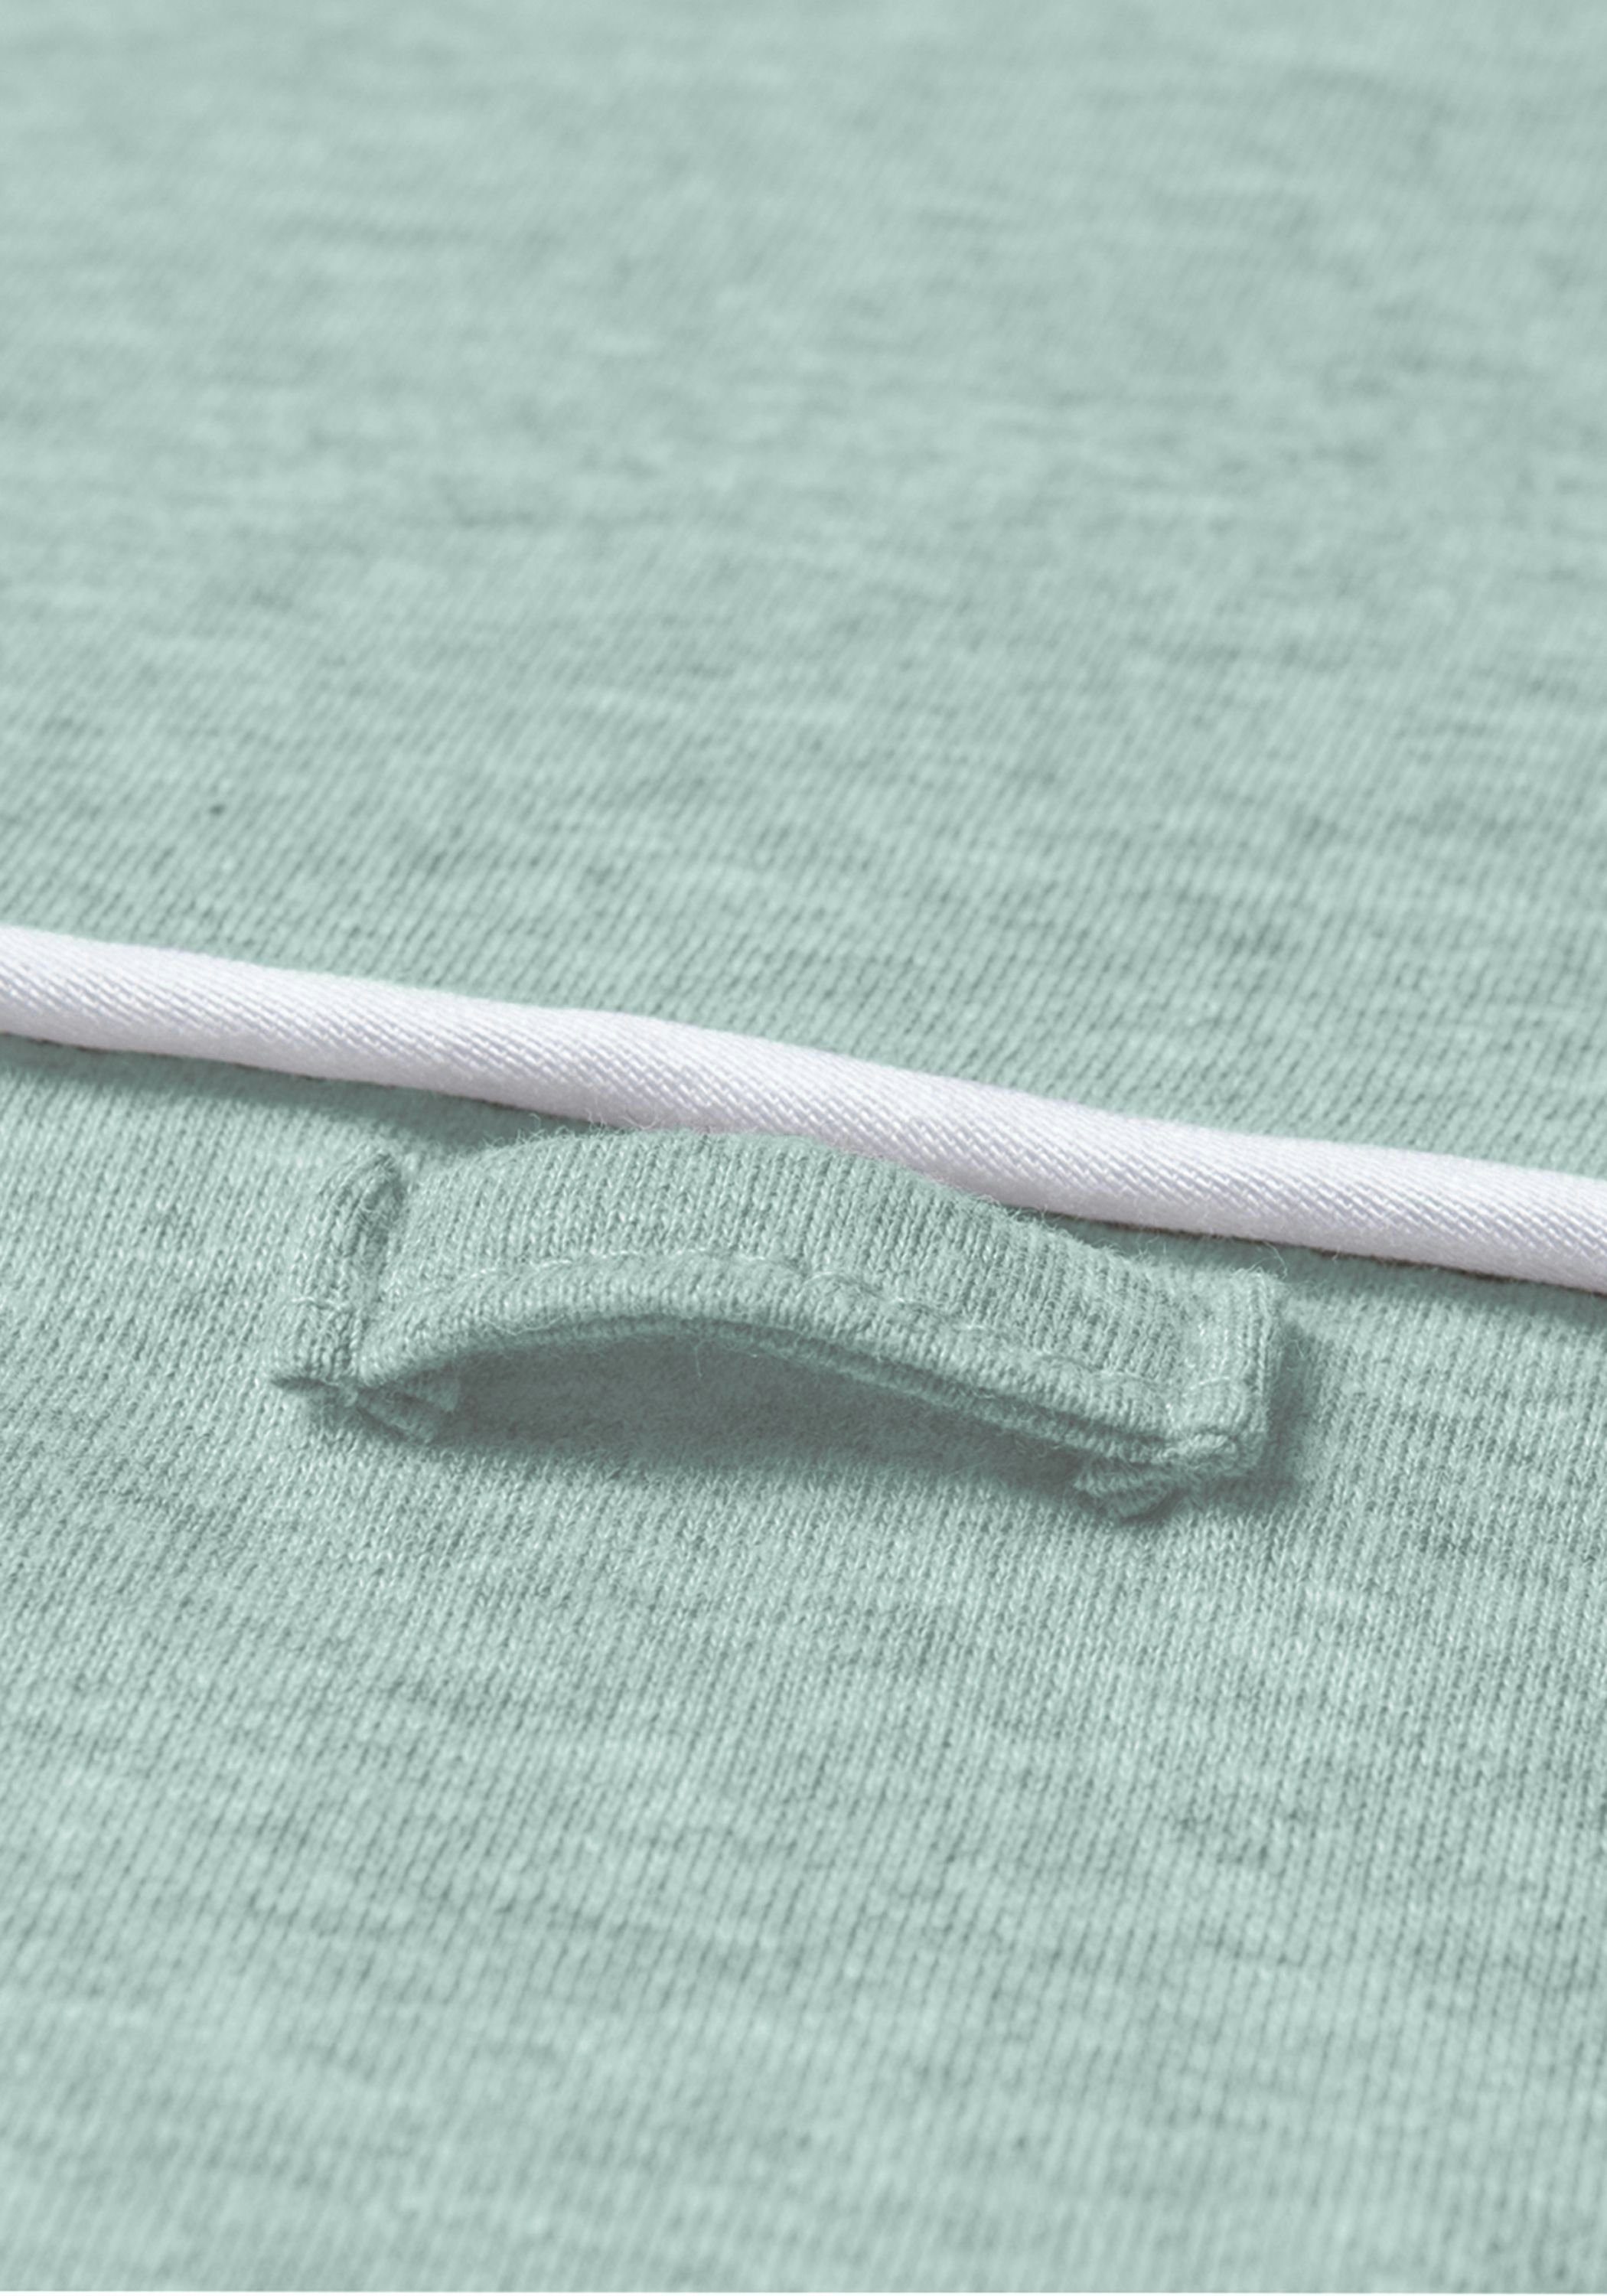 Nordic Coast Company Mint Baby Wechselbares cm] [70x80 100% Wickelunterlage Wickeltischauflage Handtuch Mintgrün Baumwolle Wickelauflage, zertifizierte Wickelauflage